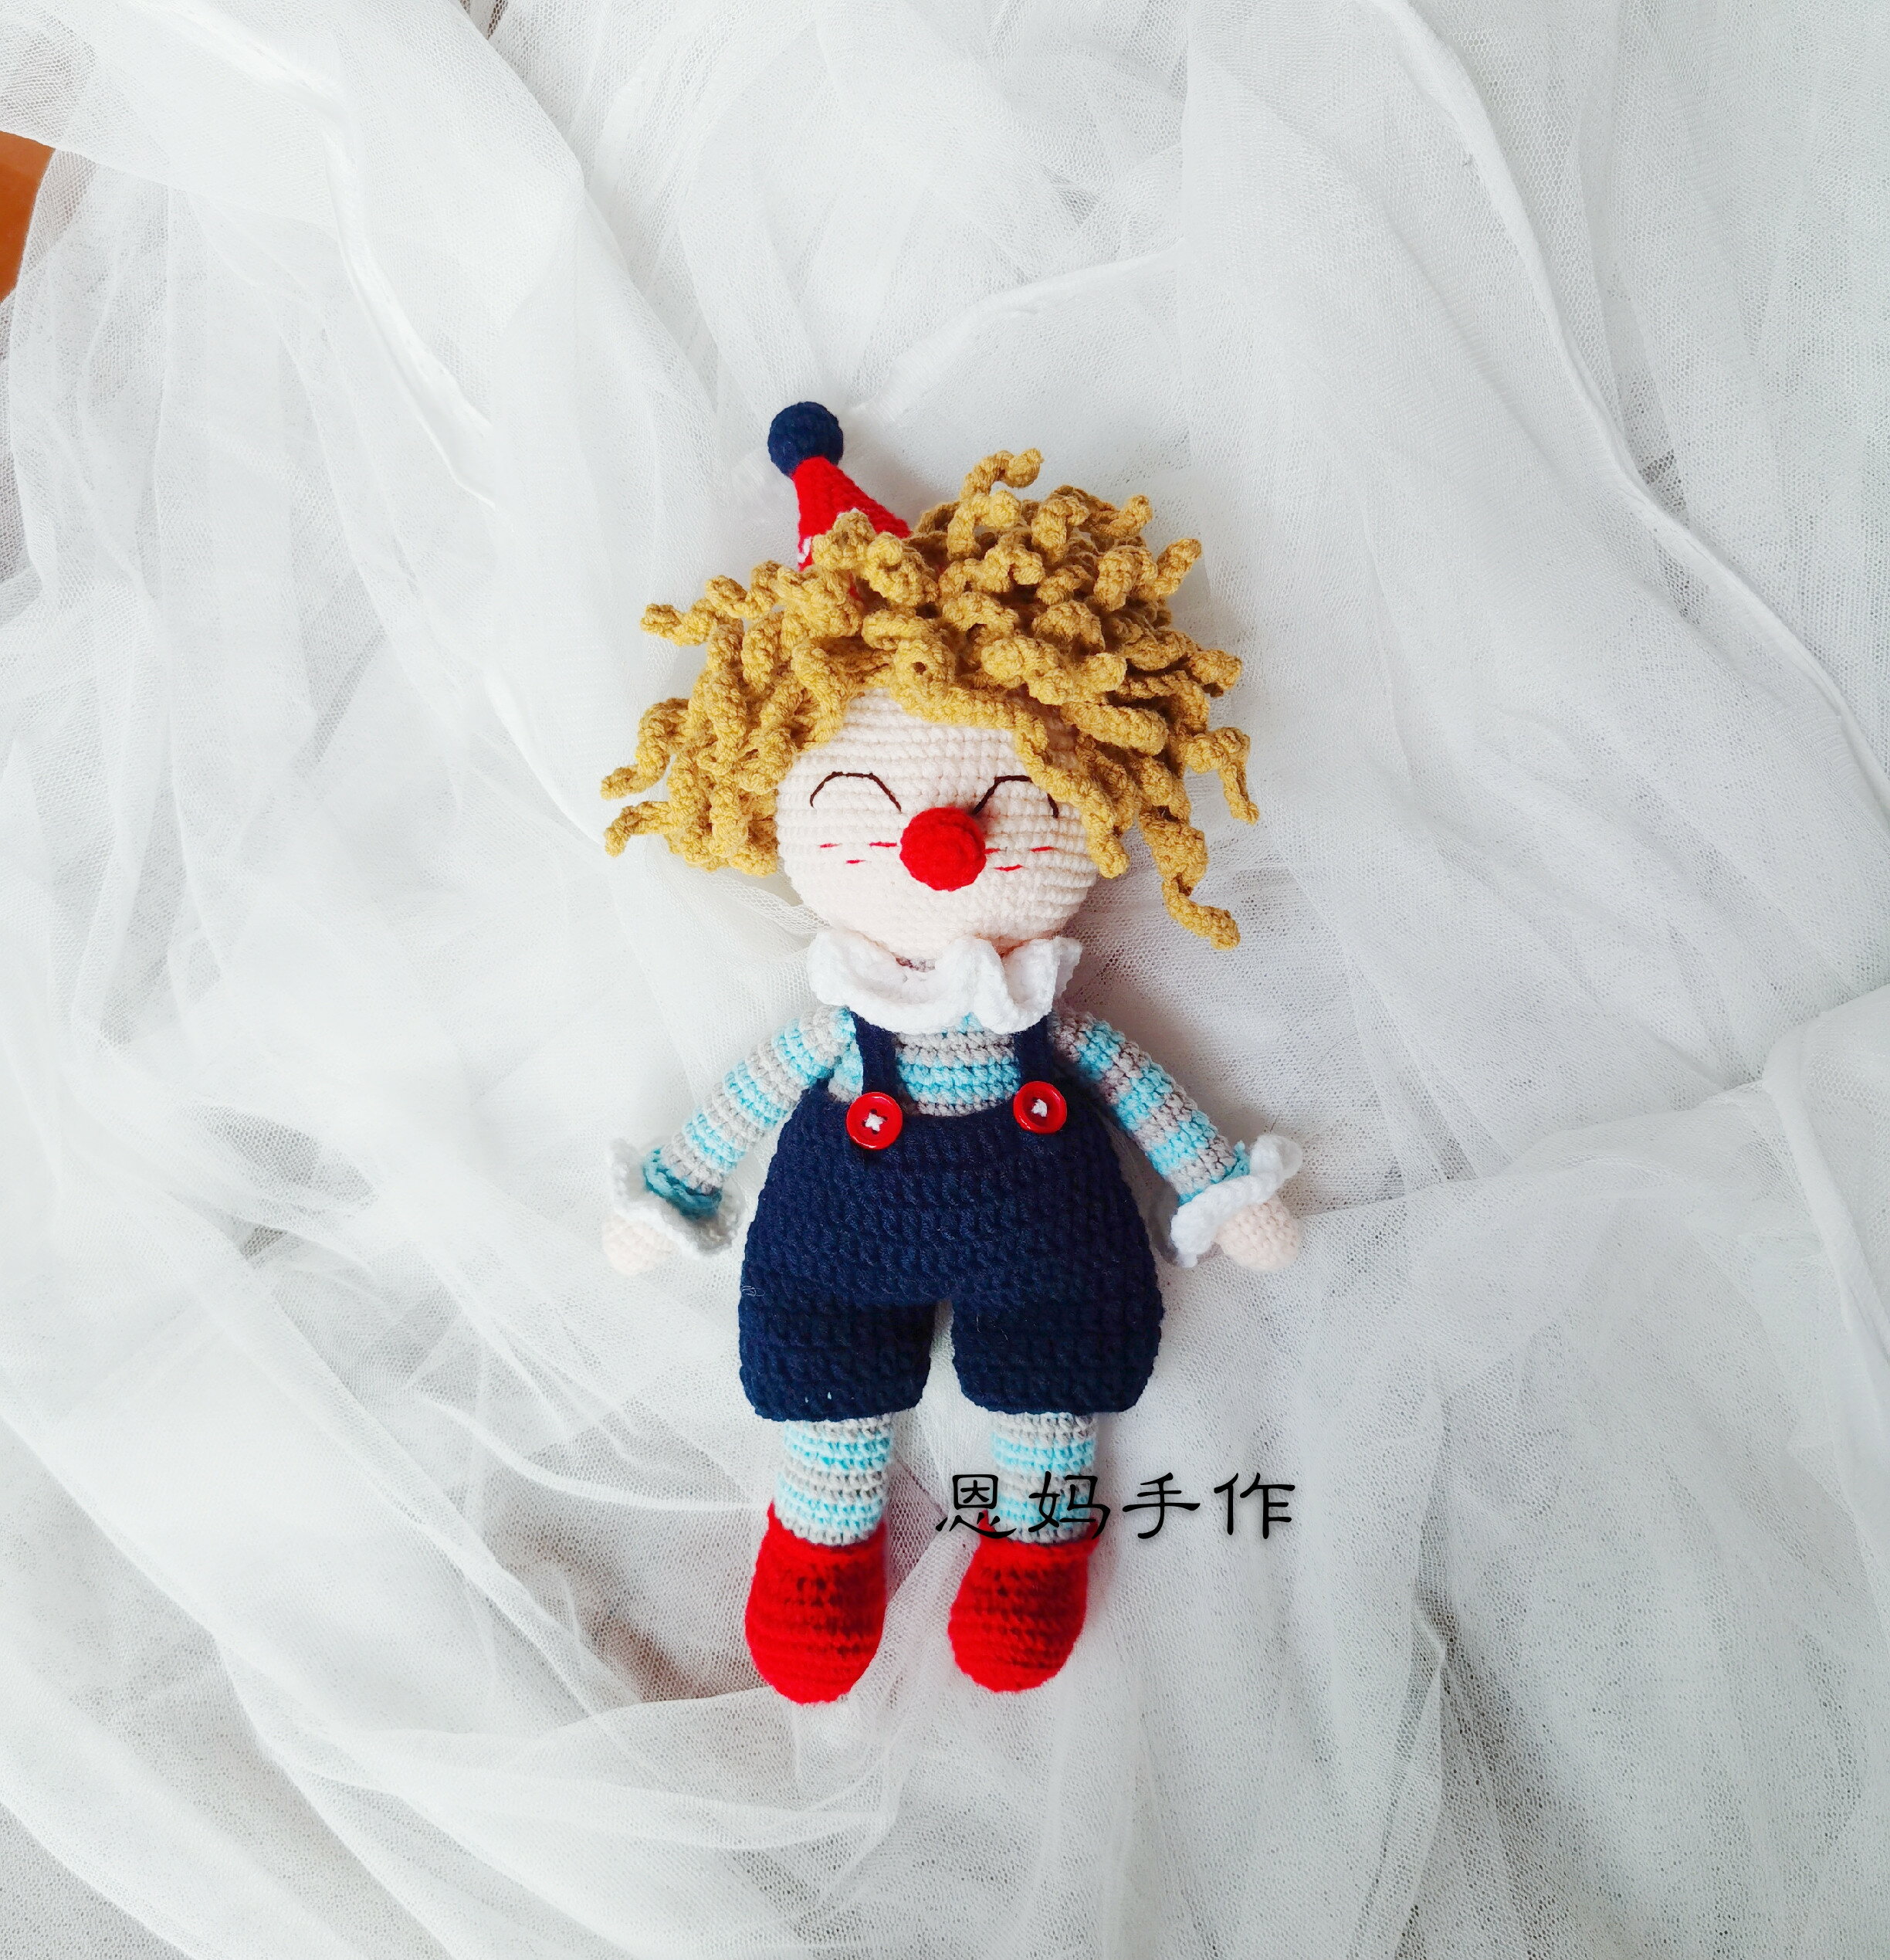 非成品手作DIY毛線鉤針編織小丑娃娃材料包含紙圖解打發時間 居家小物